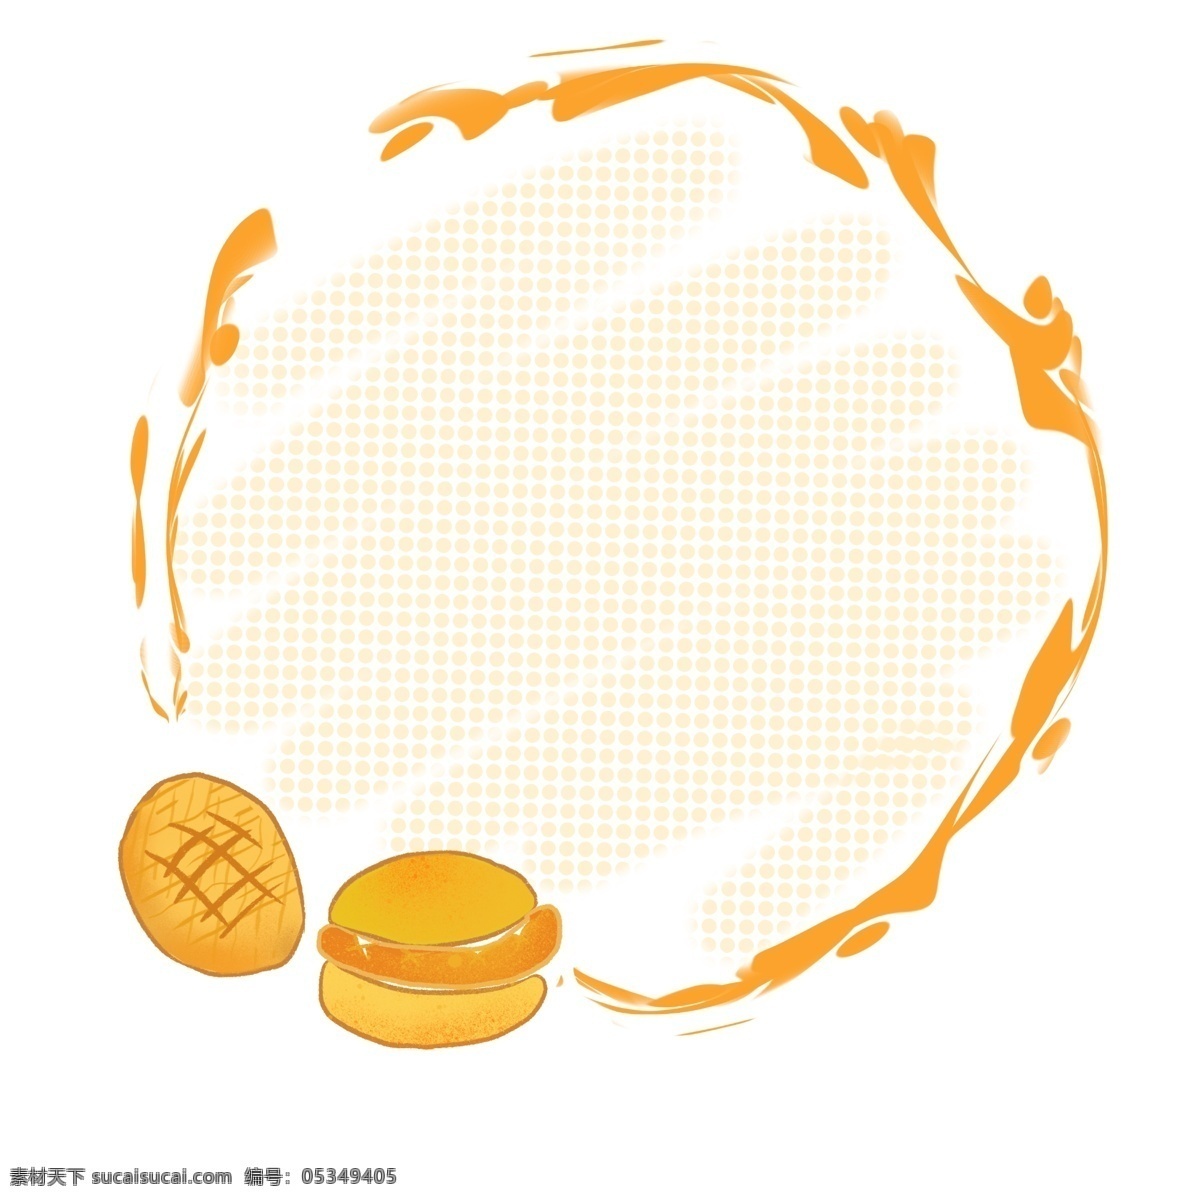 橙色 汉堡 美食 边框 橙色边框 汉堡美食边框 面包边框 汉堡包 插图 美食边框 橙色圆形边框